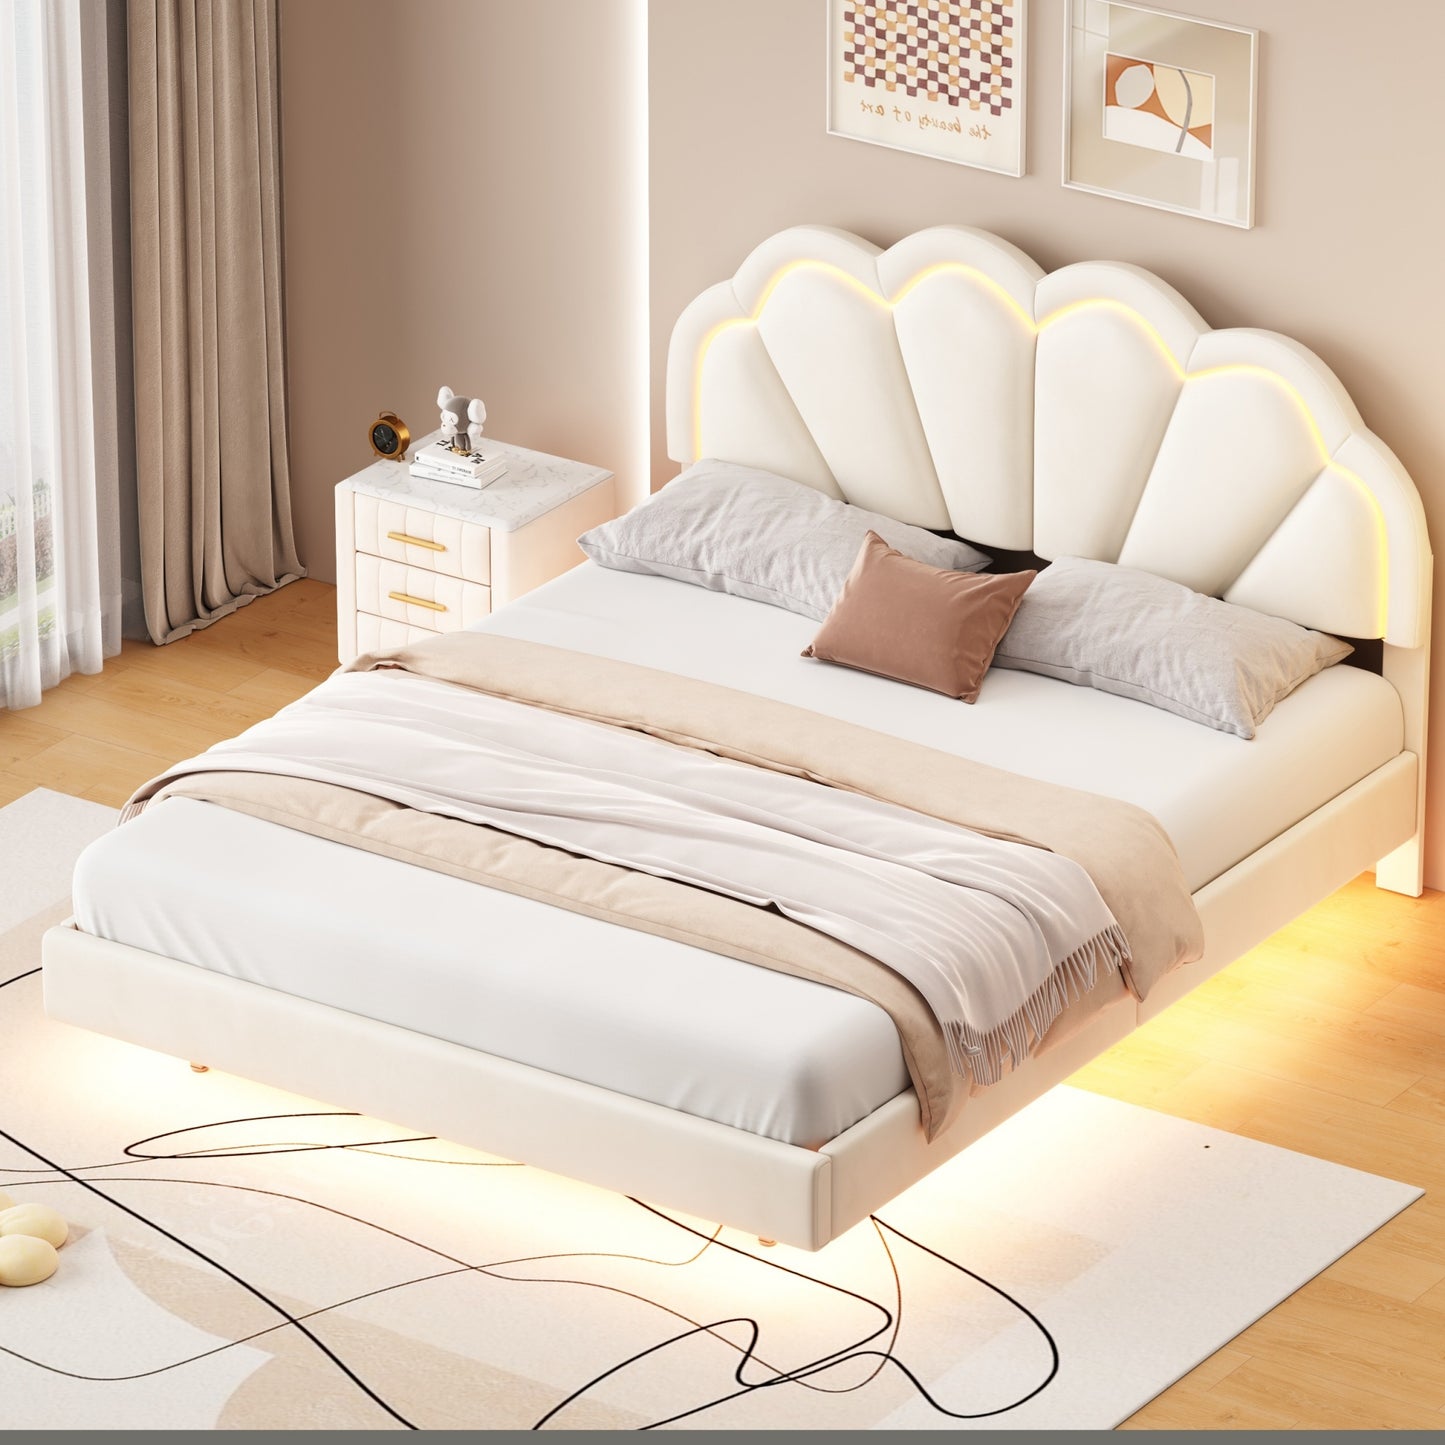 floating velvet elegant smart led platform bed